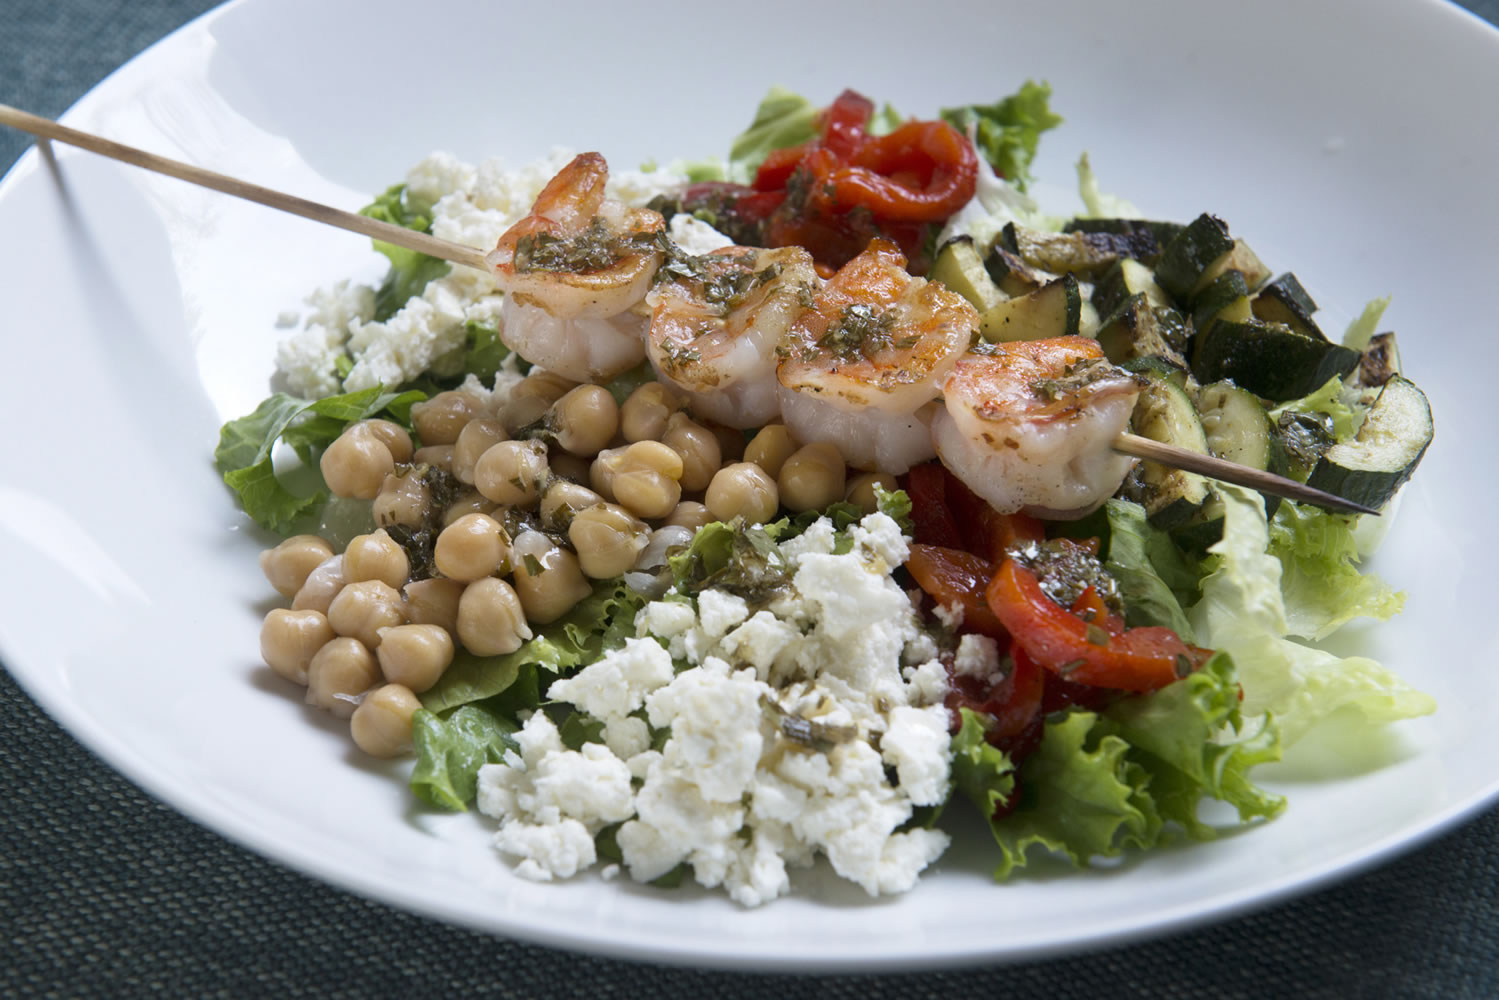 Mediterranean Chef's Salad.